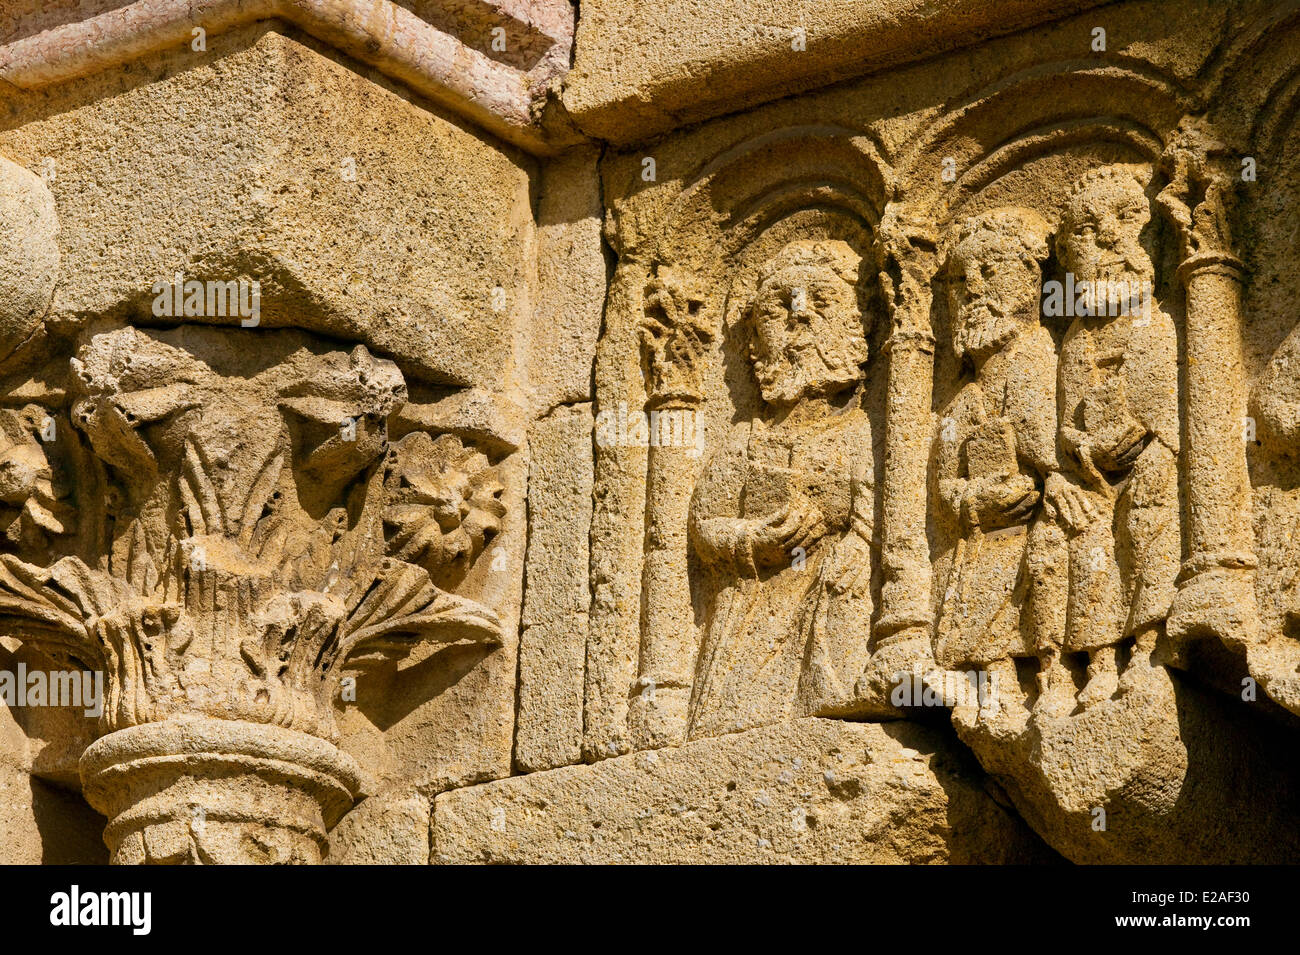 France, Alpes de Haute Provence, Durance Valley, Ganagobie, Abbey Notre Dame de Ganagobie, scalloped lintel Stock Photo